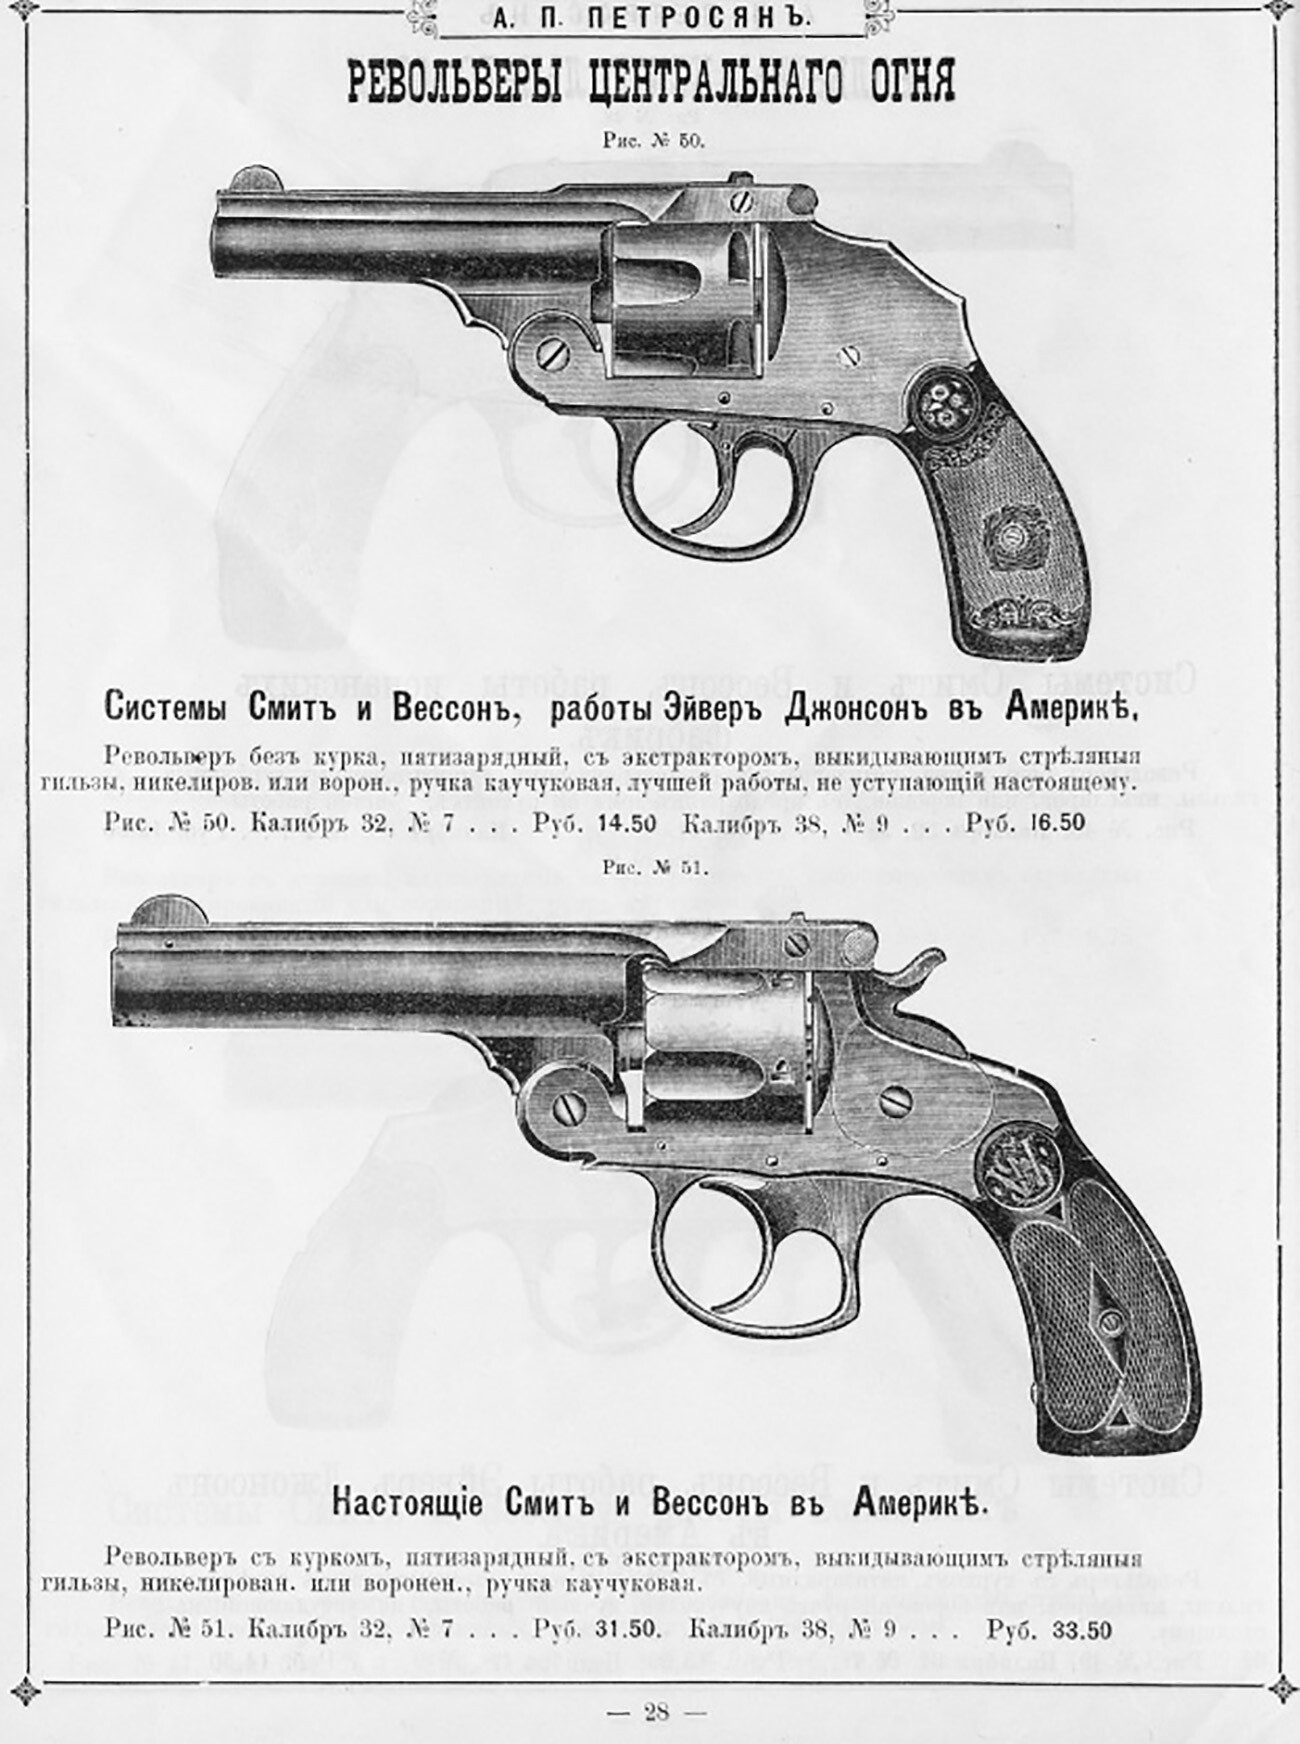 Revolvers vendus dans l'un des magasins d'armes de l'Empire russe